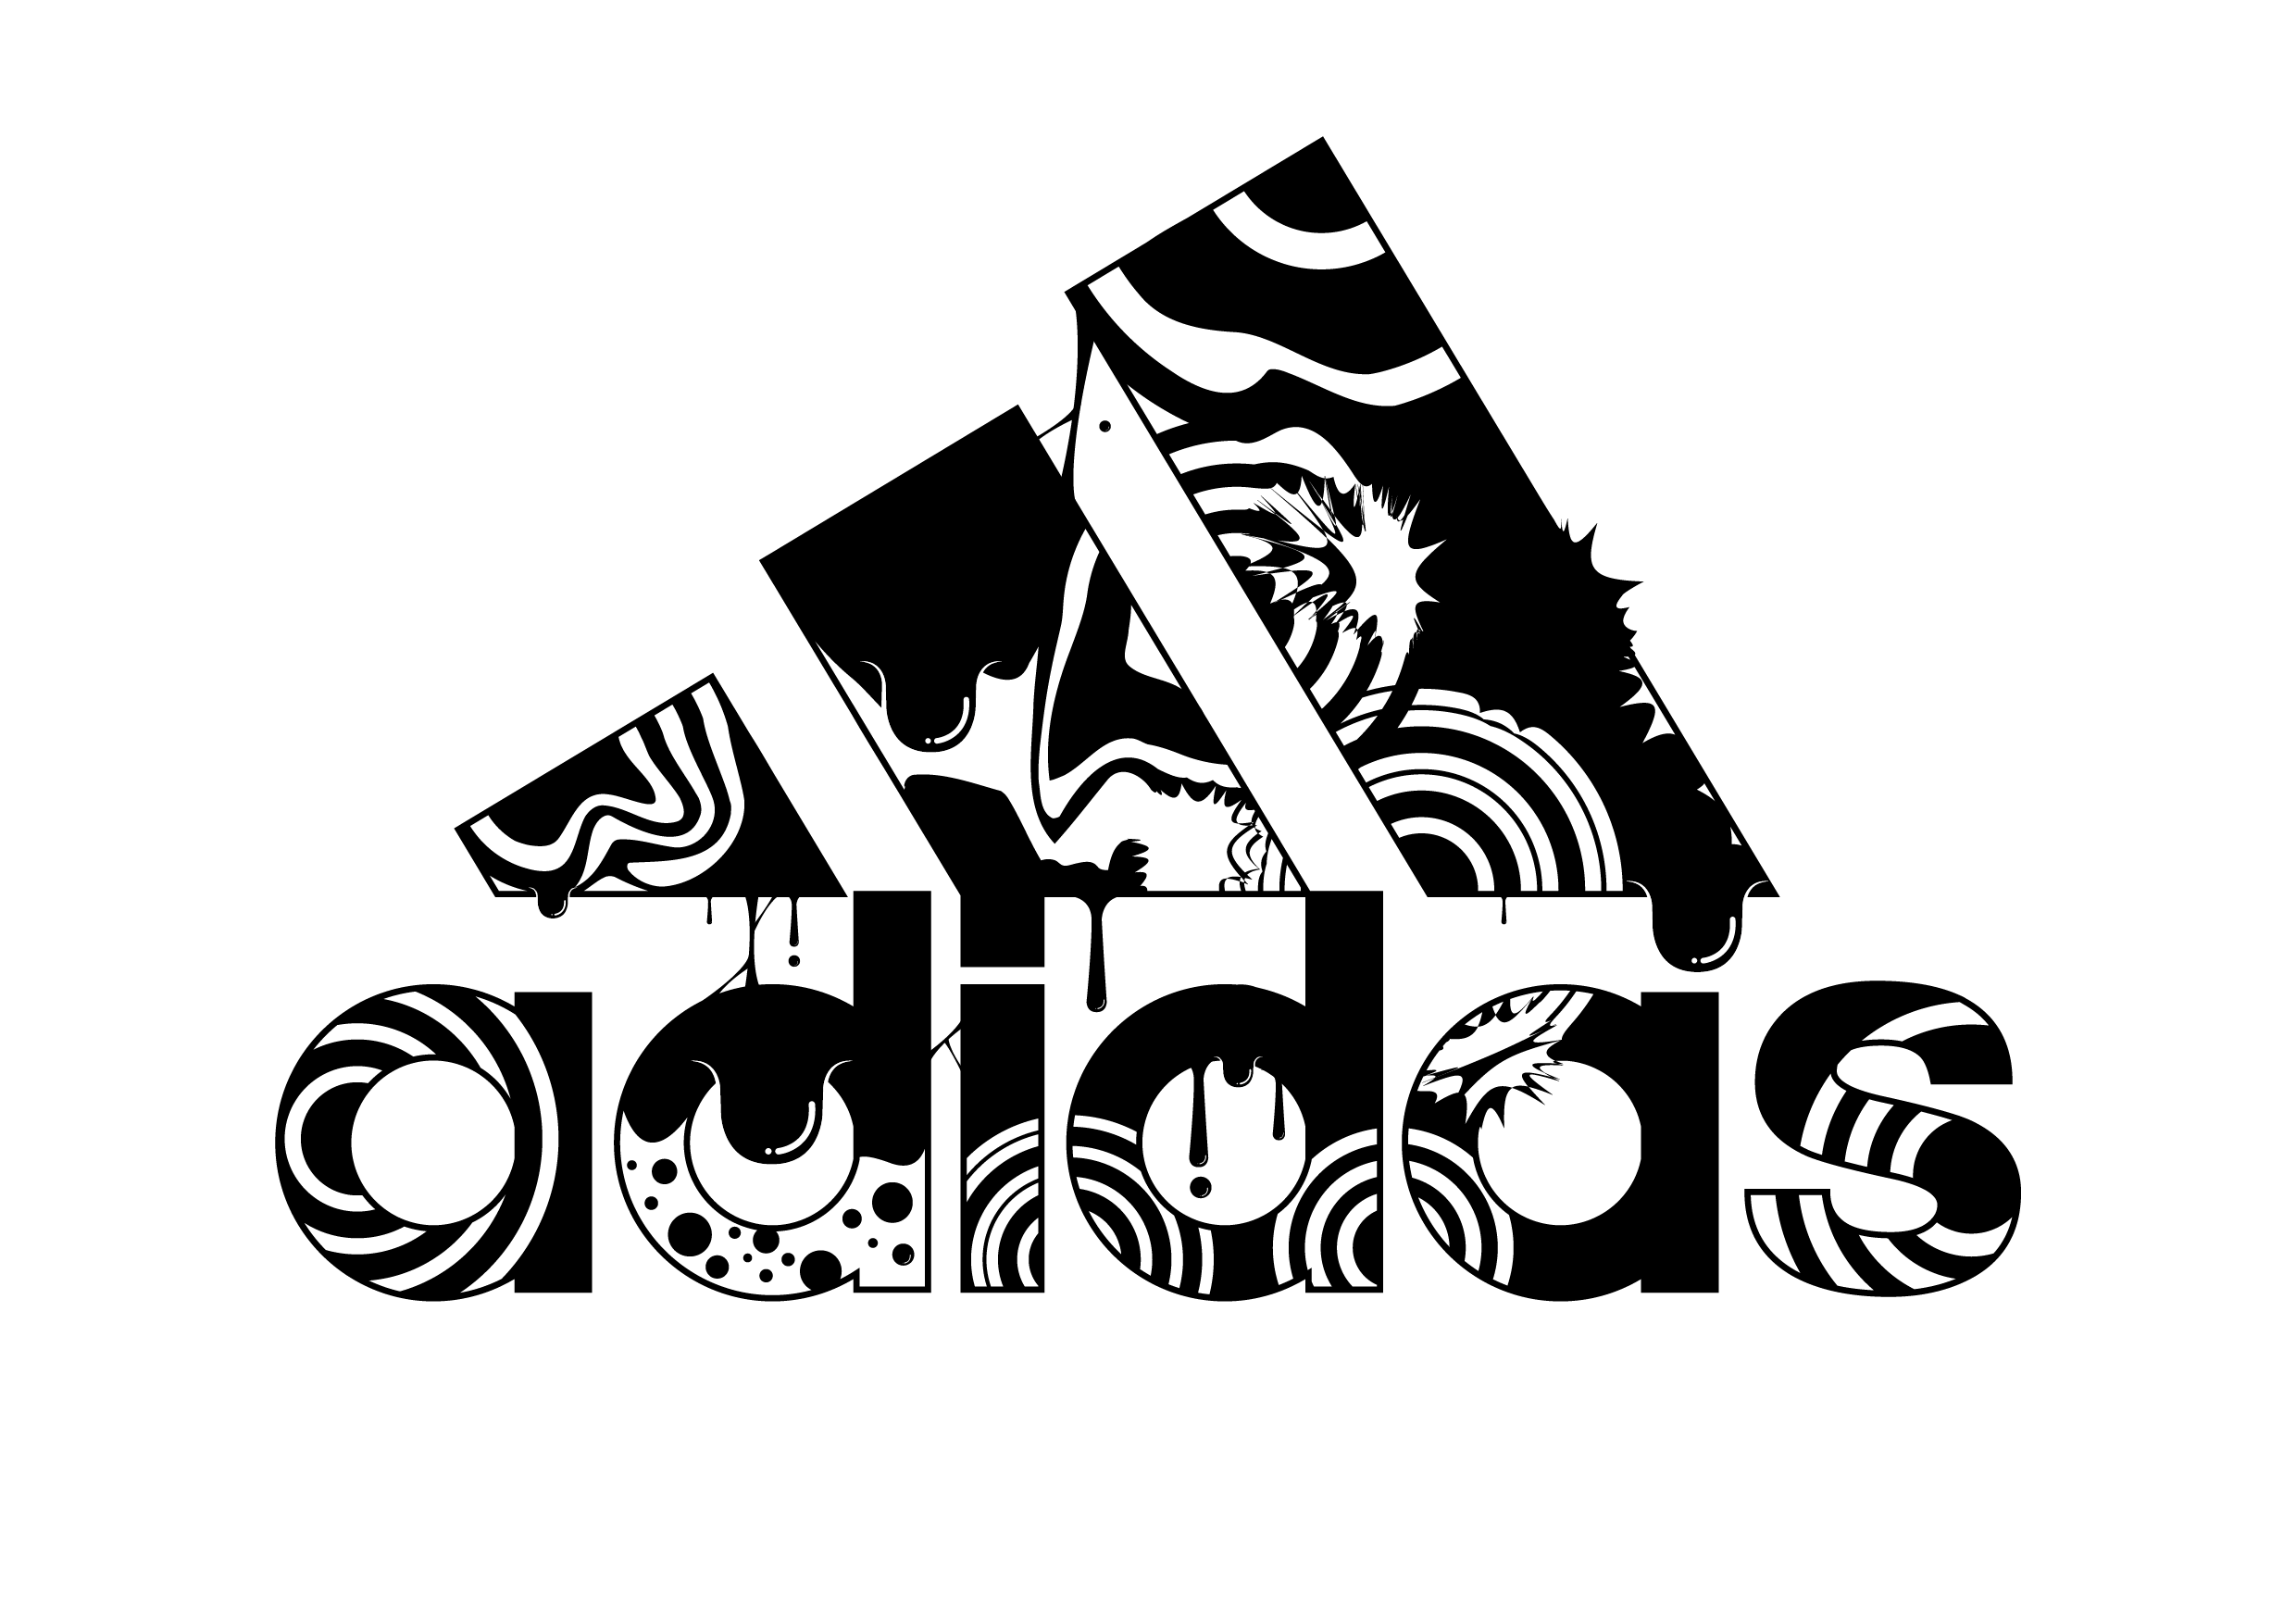 adidas 03 logo vector